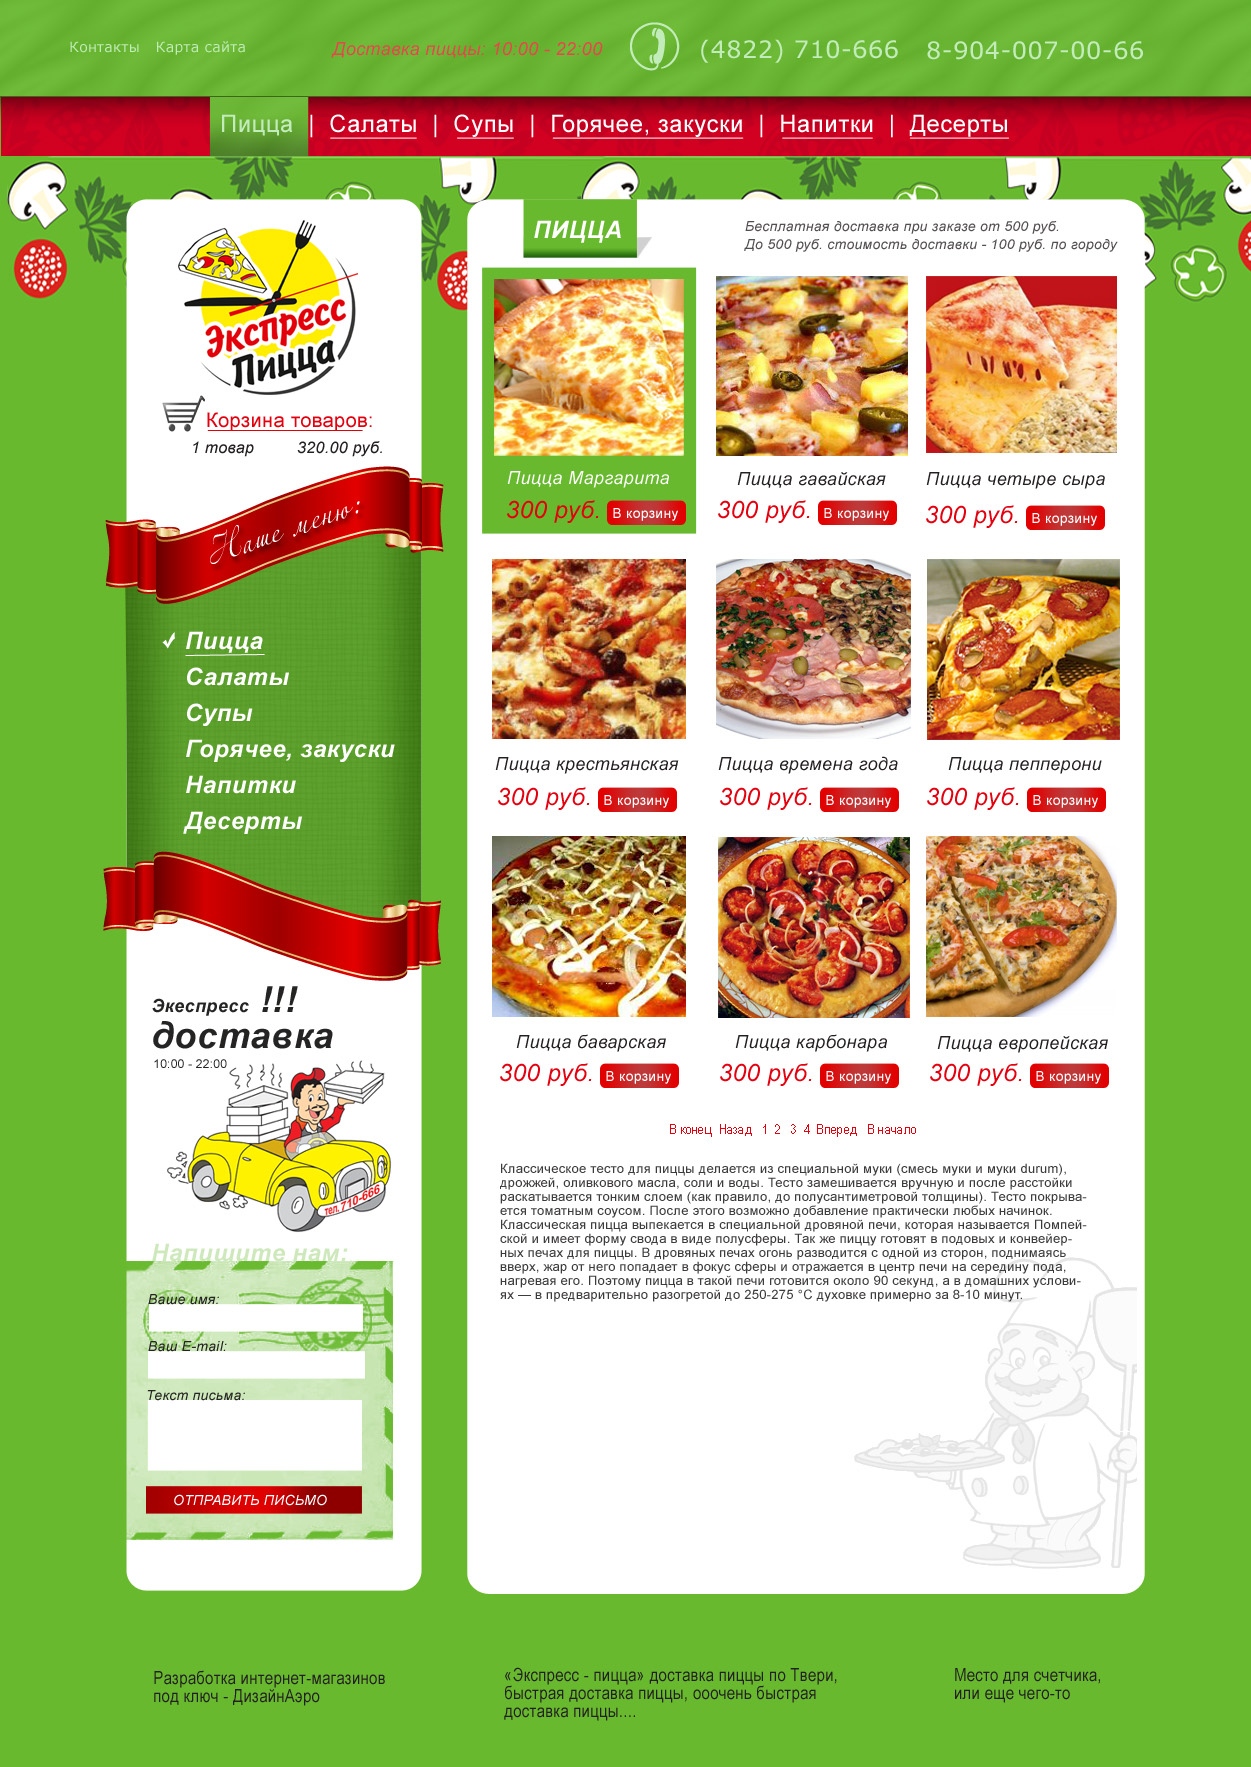 Интернет-магазин пиццы в Твери